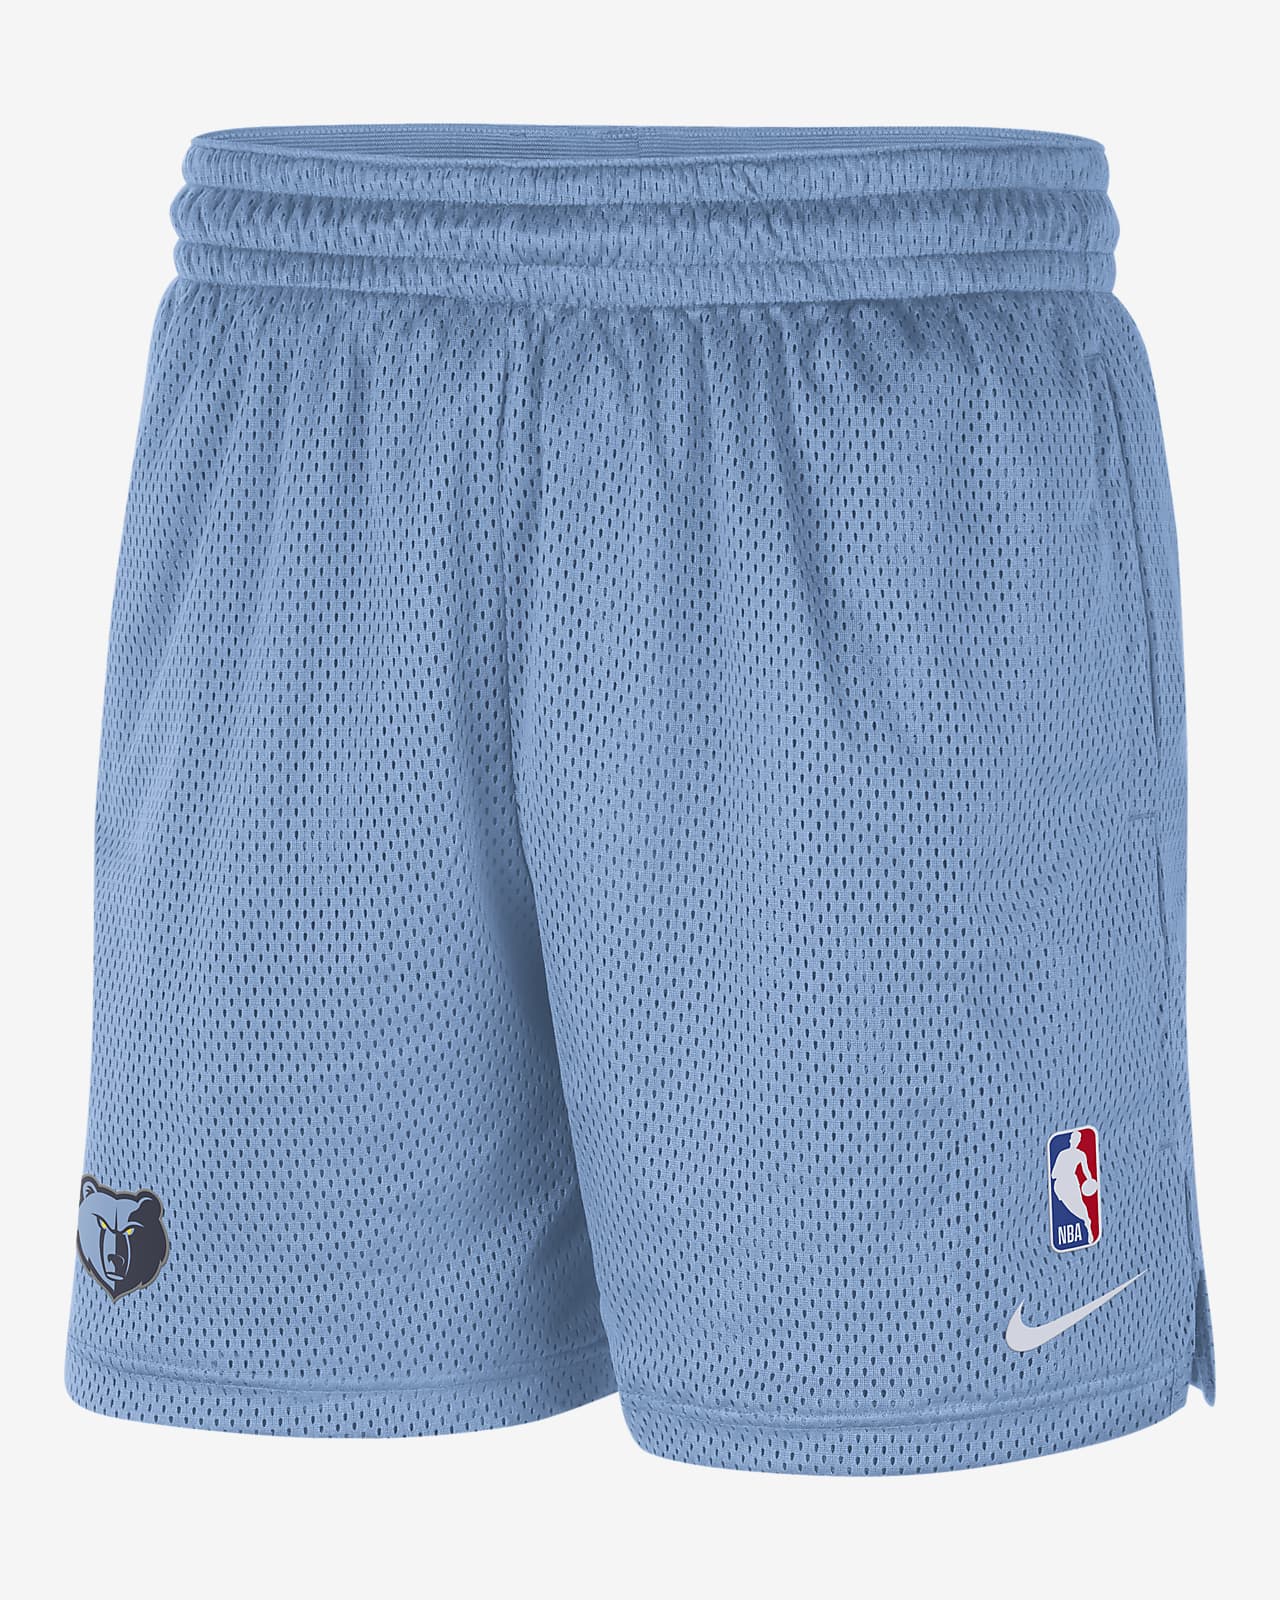 Shorts Nike NBA para hombre Memphis Grizzlies